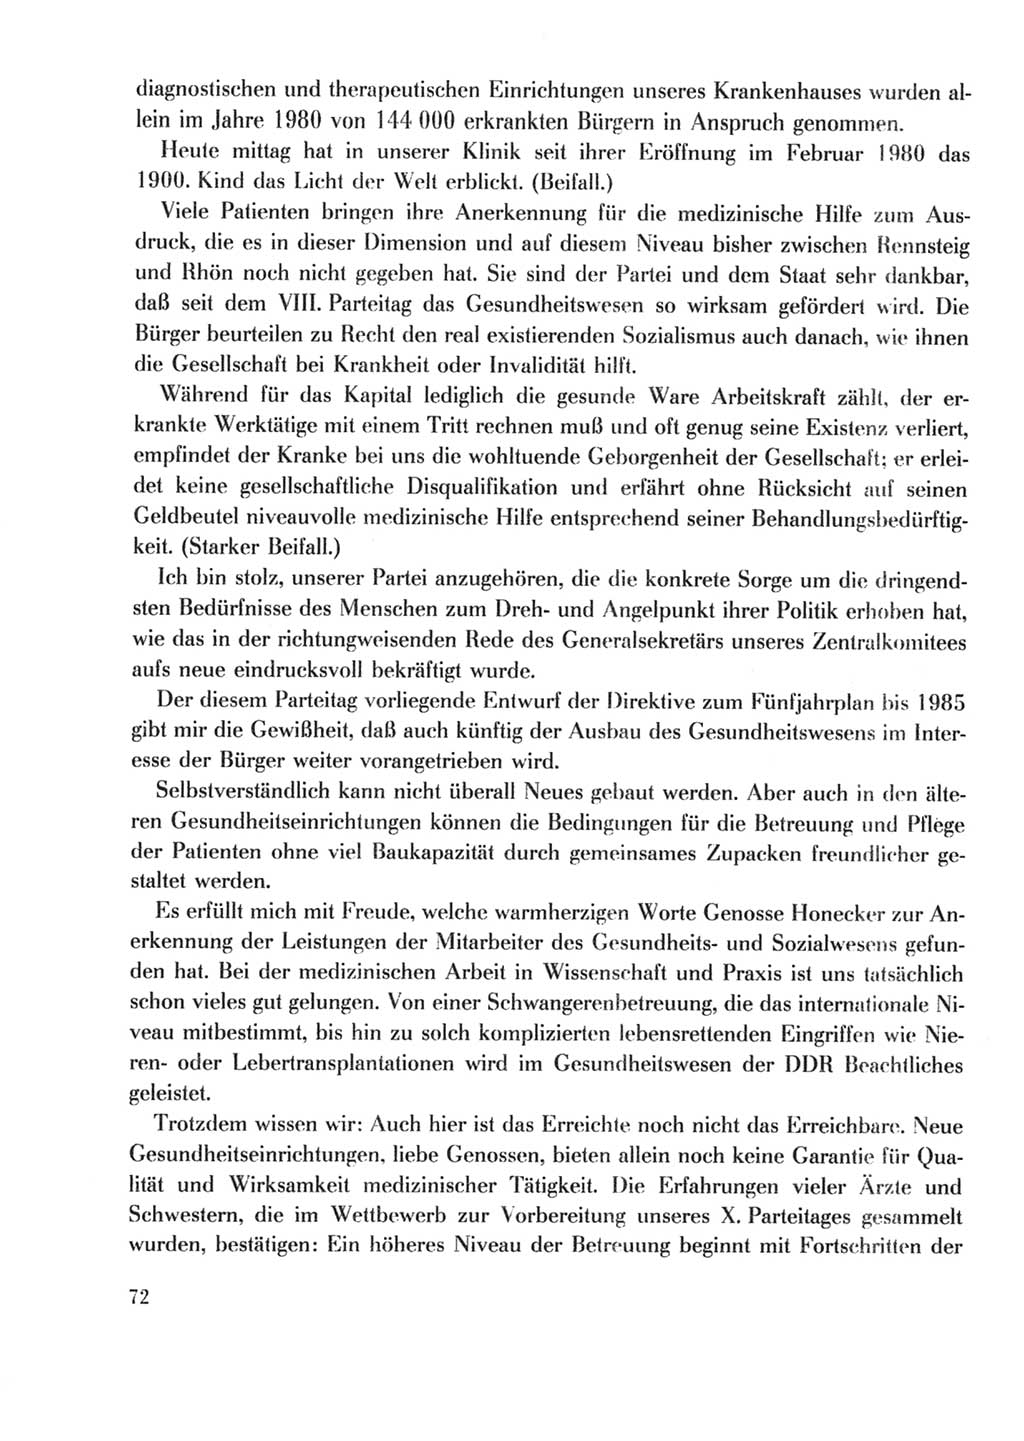 Protokoll der Verhandlungen des Ⅹ. Parteitages der Sozialistischen Einheitspartei Deutschlands (SED) [Deutsche Demokratische Republik (DDR)] 1981, Band 2, Seite 72 (Prot. Verh. Ⅹ. PT SED DDR 1981, Bd. 2, S. 72)